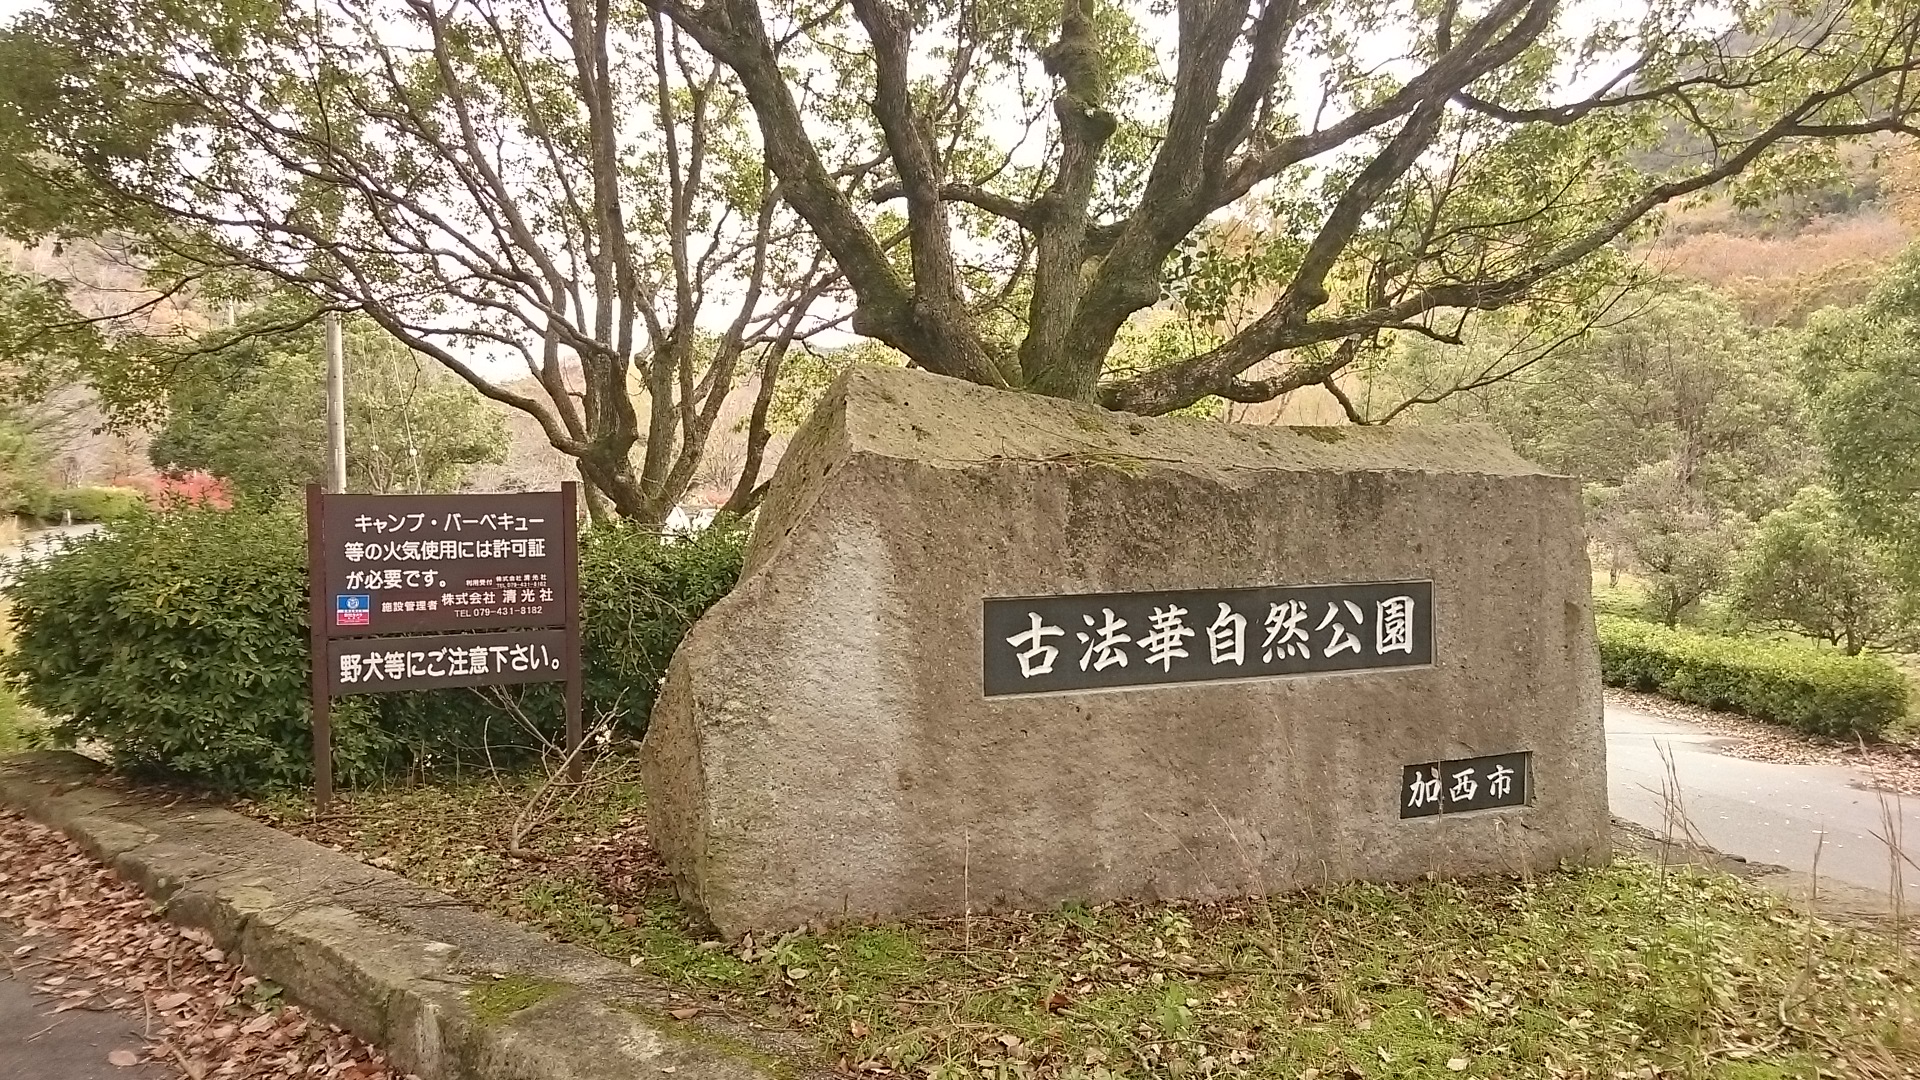 2017.11.24 古法華自然公園キャンプ場に行った ブログ【前編】